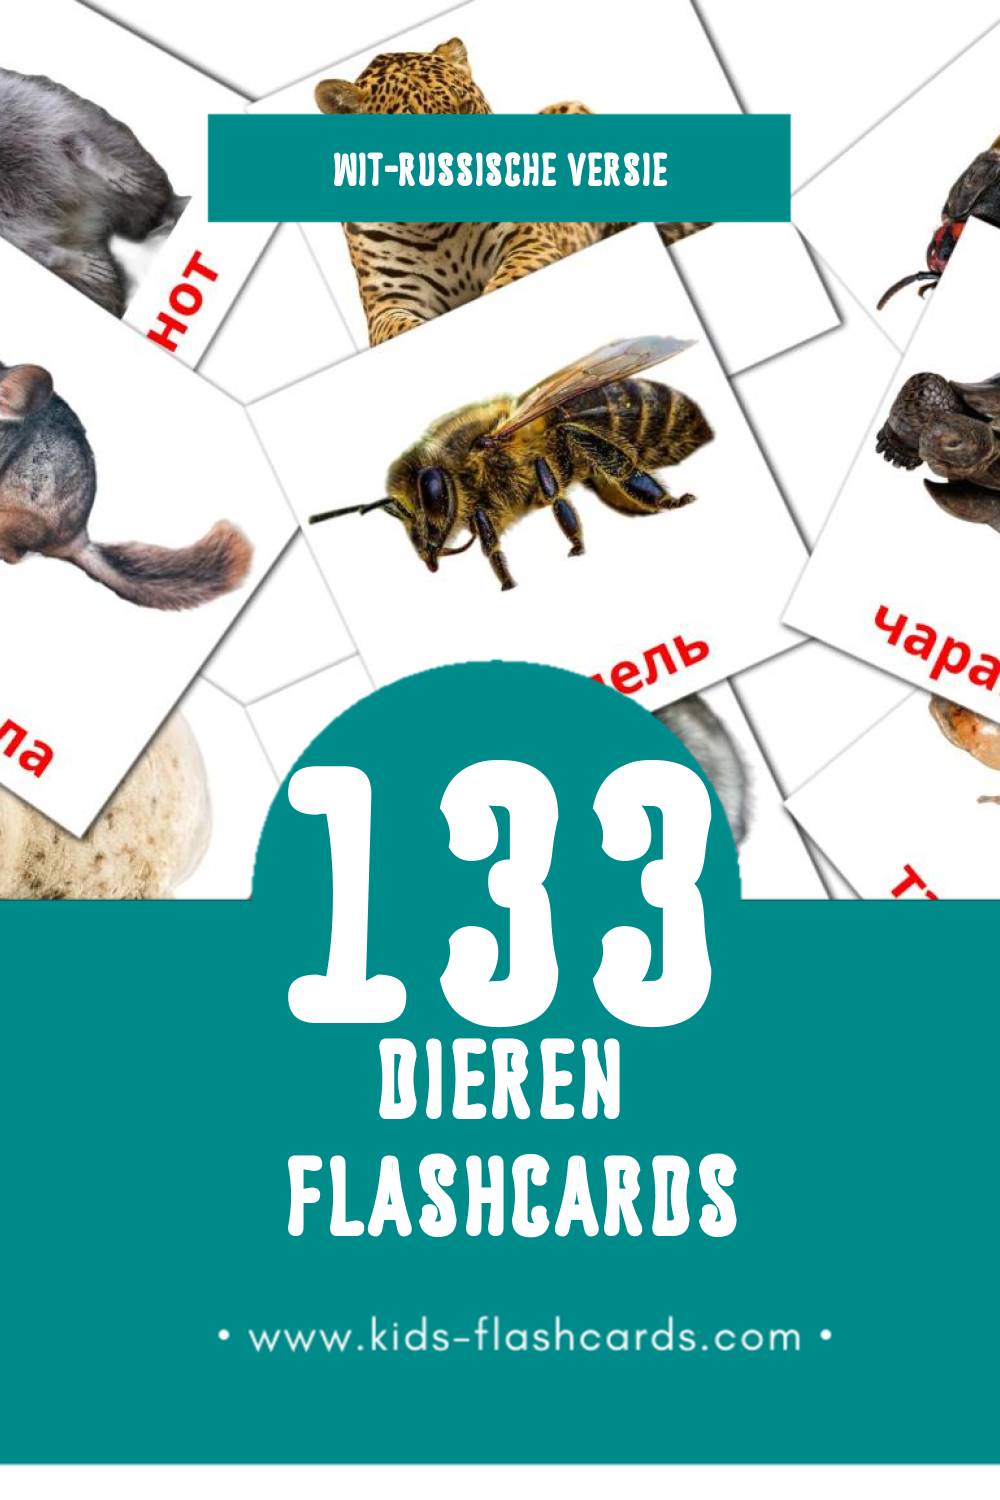 Visuele Жывёлы Flashcards voor Kleuters (133 kaarten in het Wit-russisch)